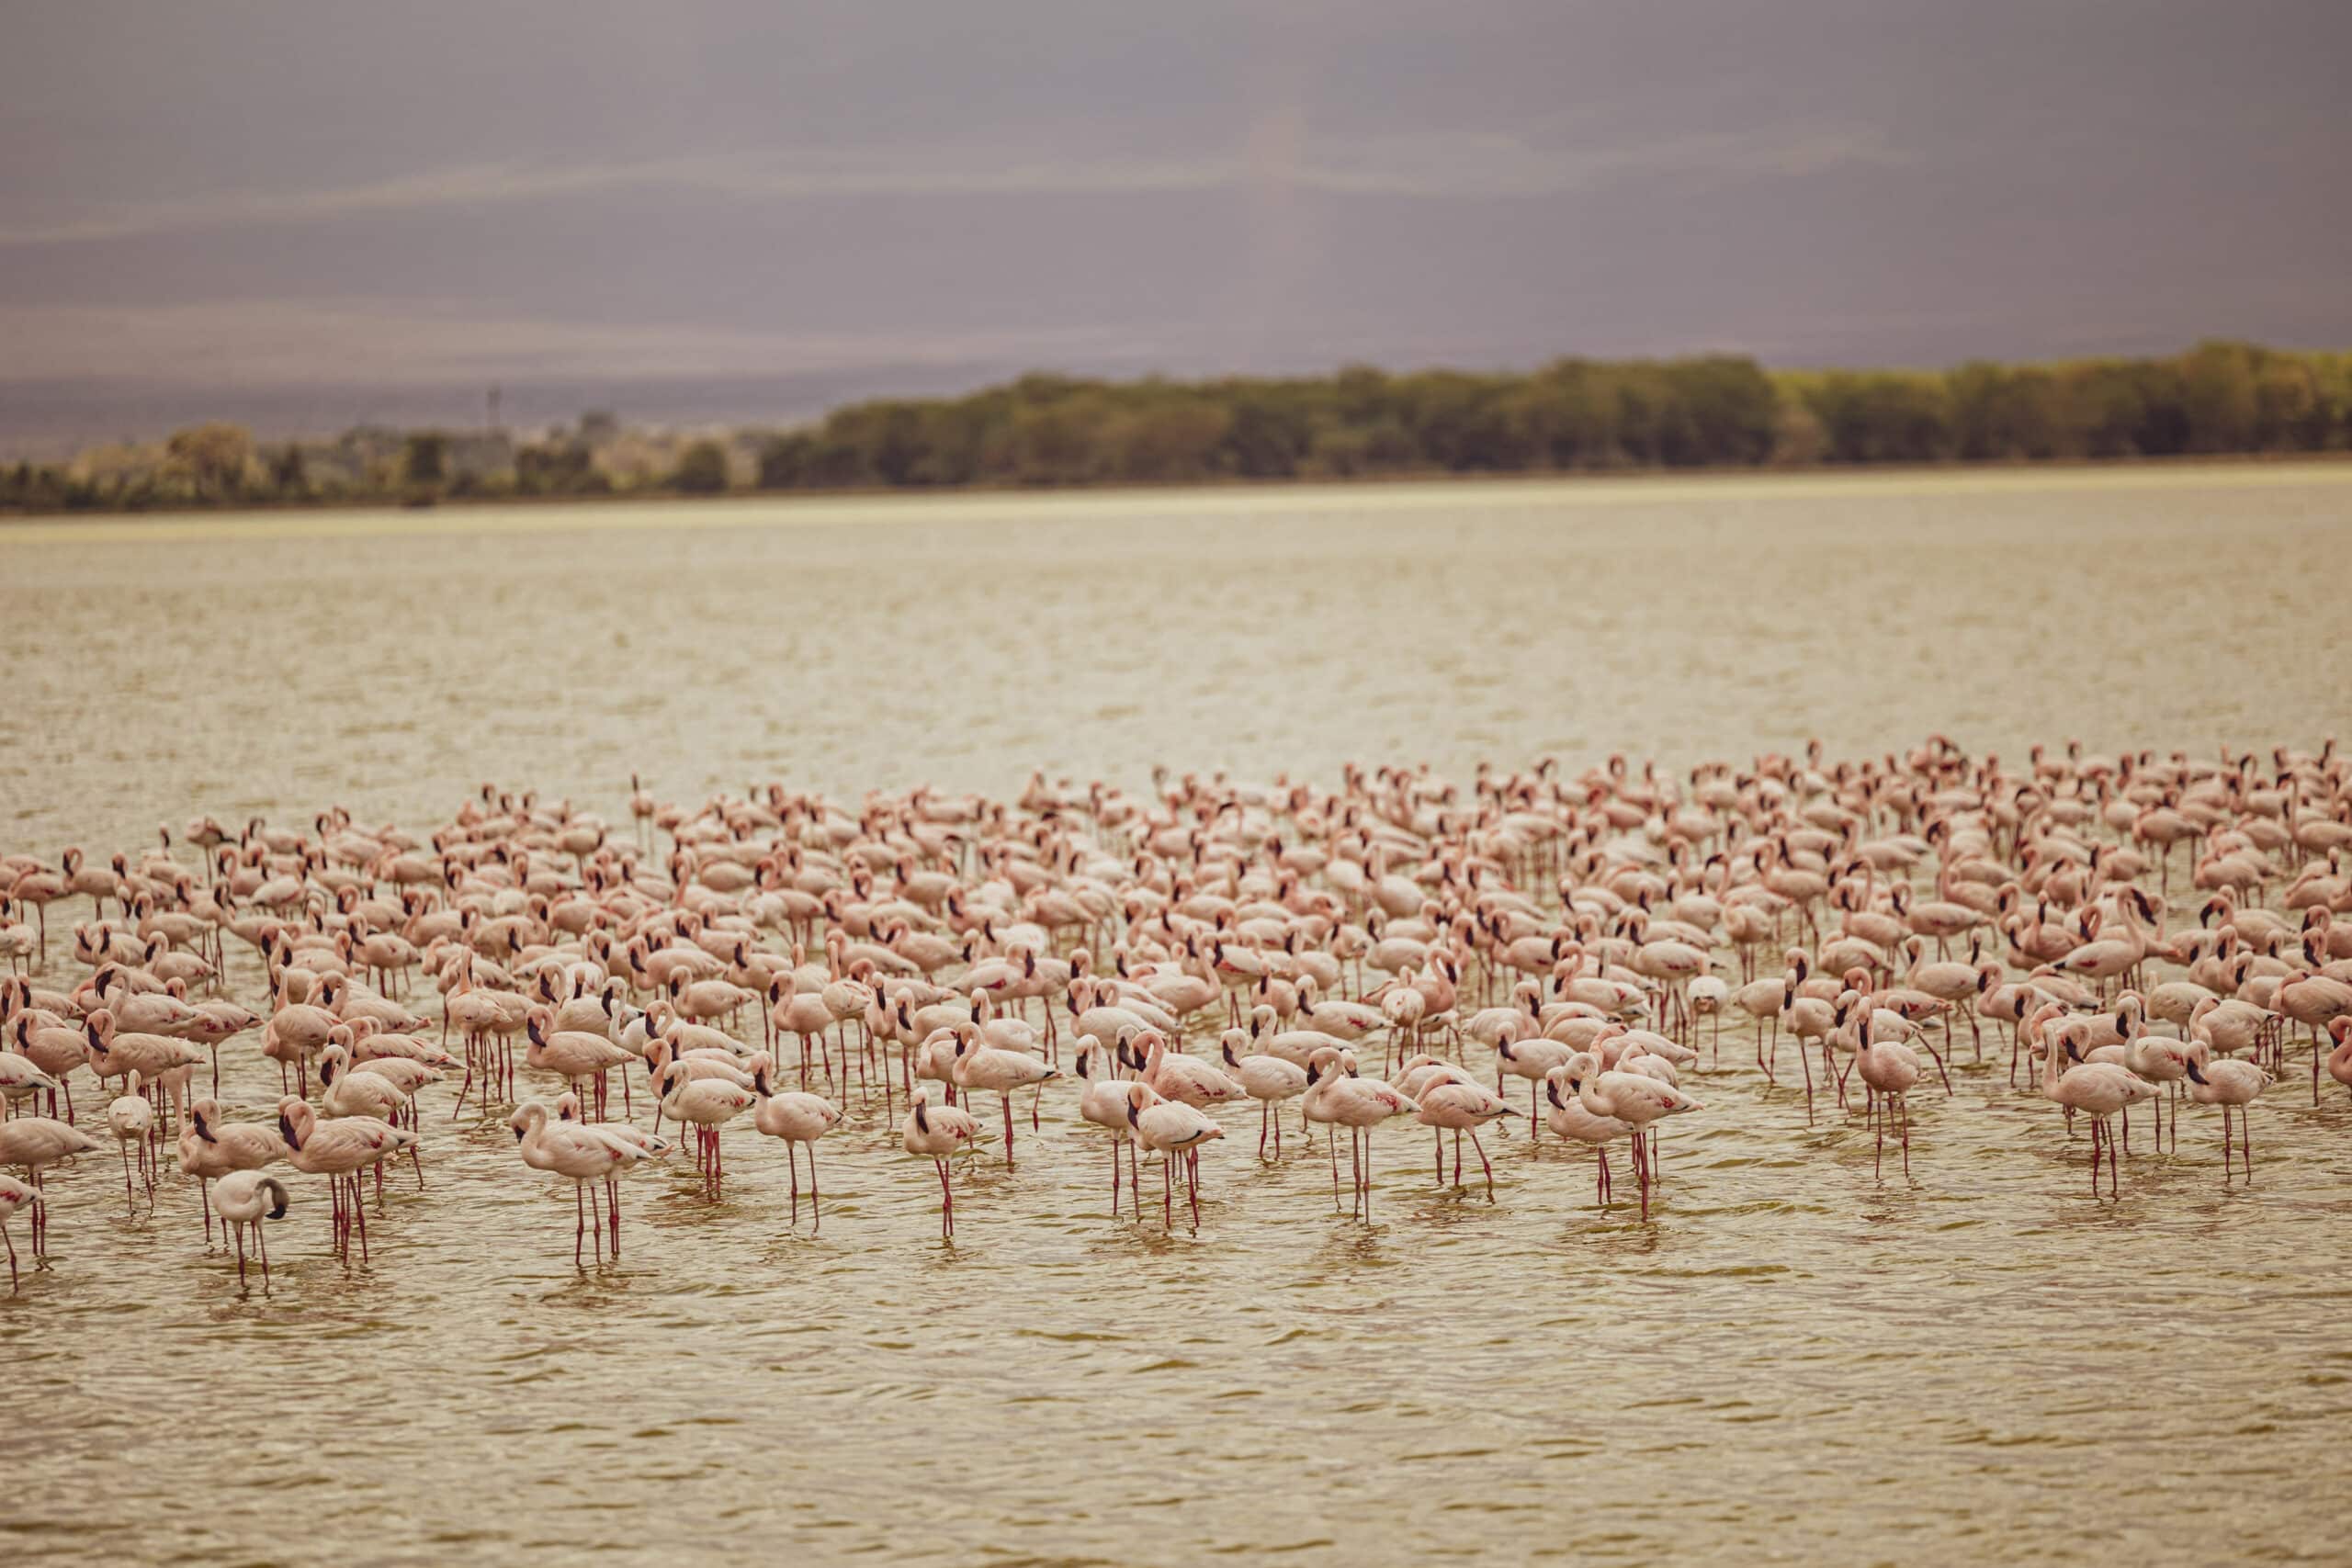 Ein großer Schwarm Flamingos steht im seichten Wasser mit einer weichgezeichneten Landschaft im Hintergrund, hervorgehoben durch die Farben Beige und Zartgrün. © Fotografie Tomas Rodriguez